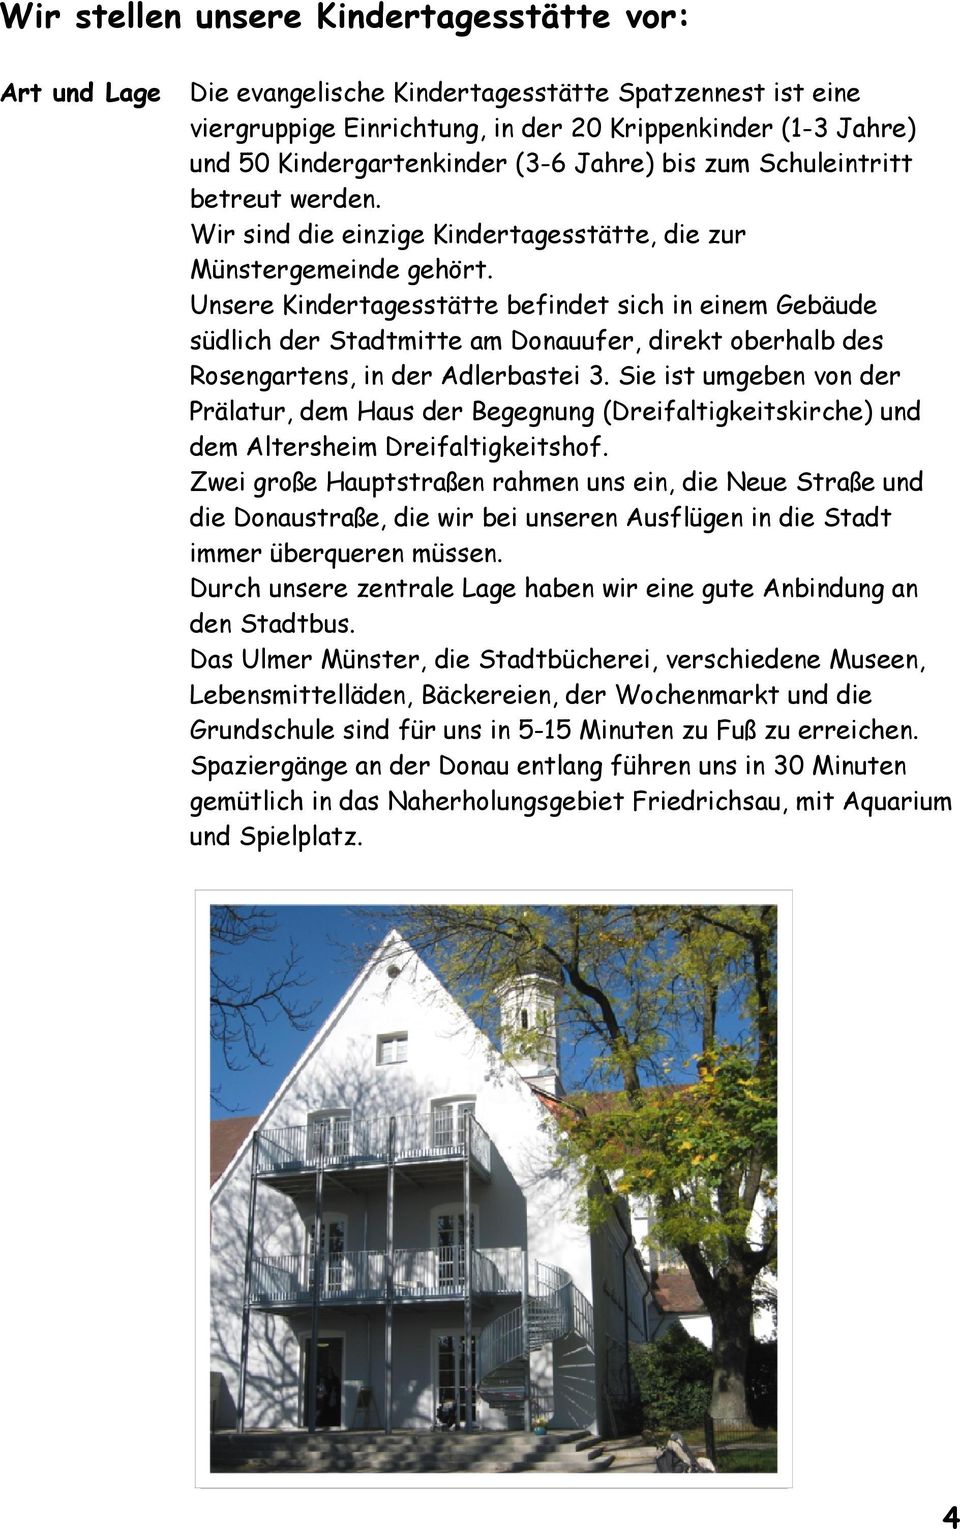 Unsere Kindertagesstätte befindet sich in einem Gebäude südlich der Stadtmitte am Donauufer, direkt oberhalb des Rosengartens, in der Adlerbastei 3.